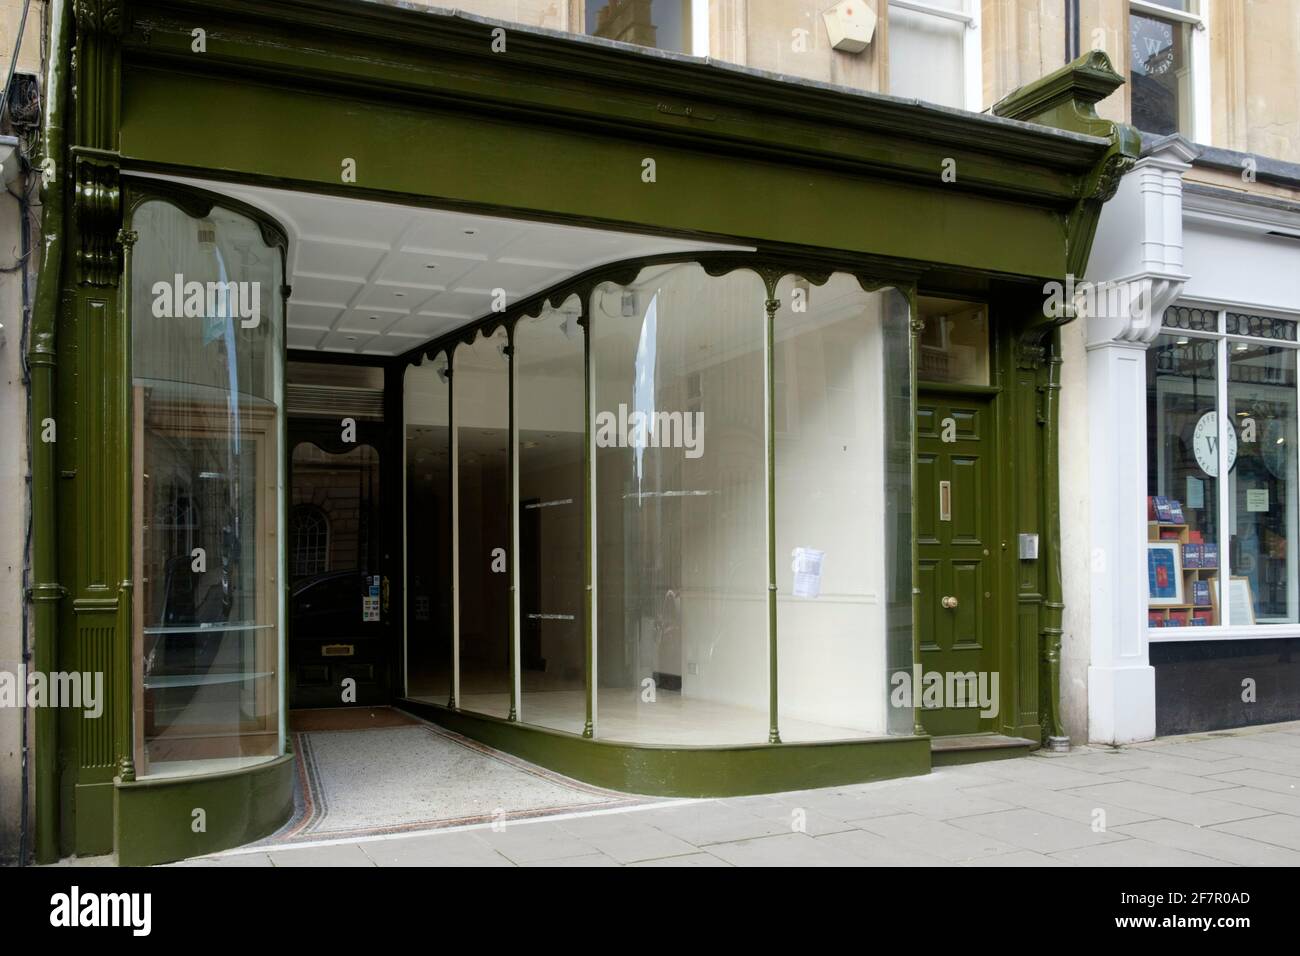 Fermeture des magasins de la ville de Bath somerset au Royaume-Uni. Les loyers élevés et la concurrence en ligne mènent à des moments difficiles. Banque D'Images